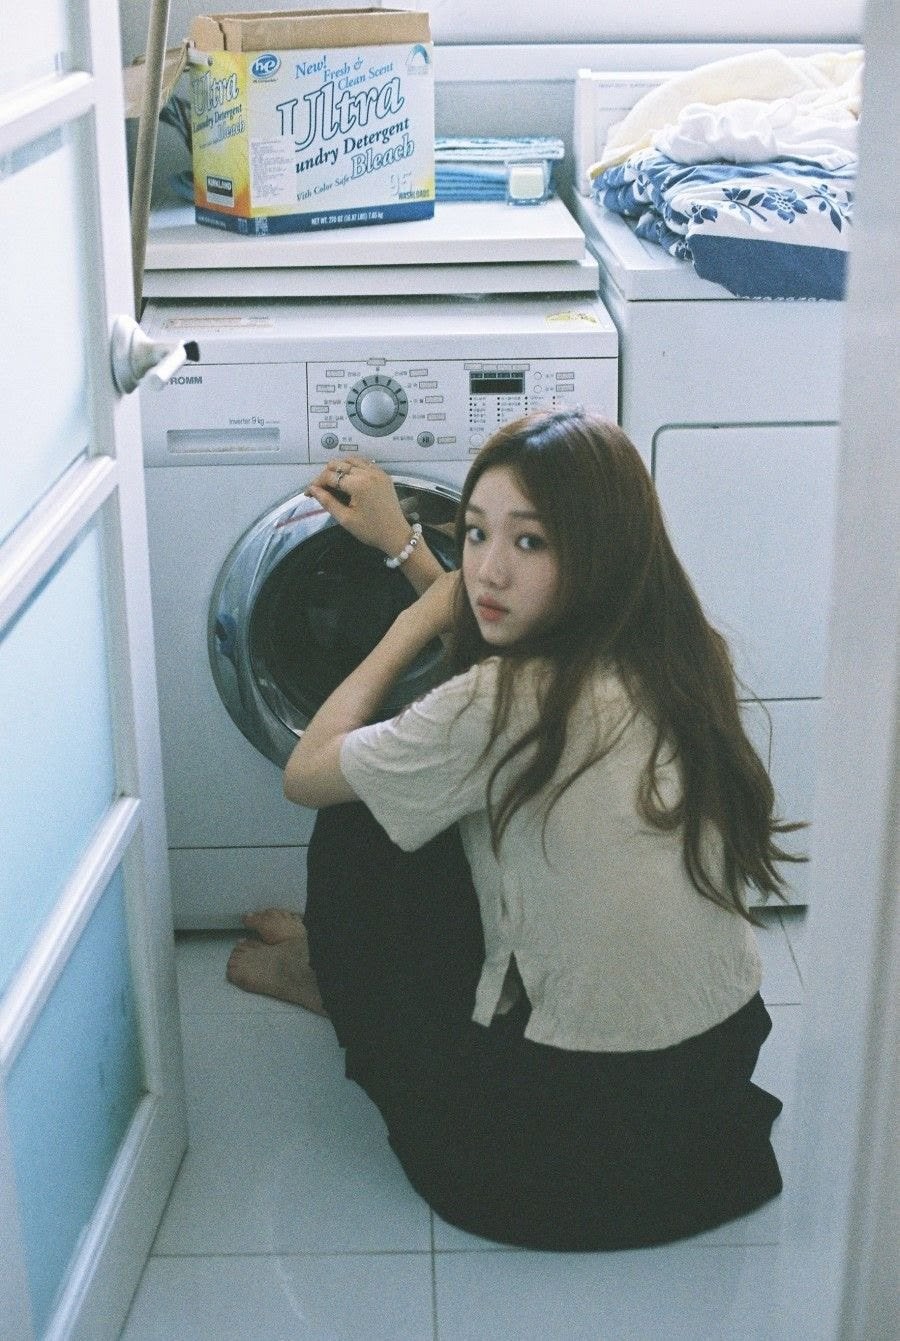 5 hành động dại dột khi sử dụng máy giặt khiến quần áo mãi không sạch, thậm chí còn chứa đầy vi khuẩn gây bệnh - Ảnh 3.